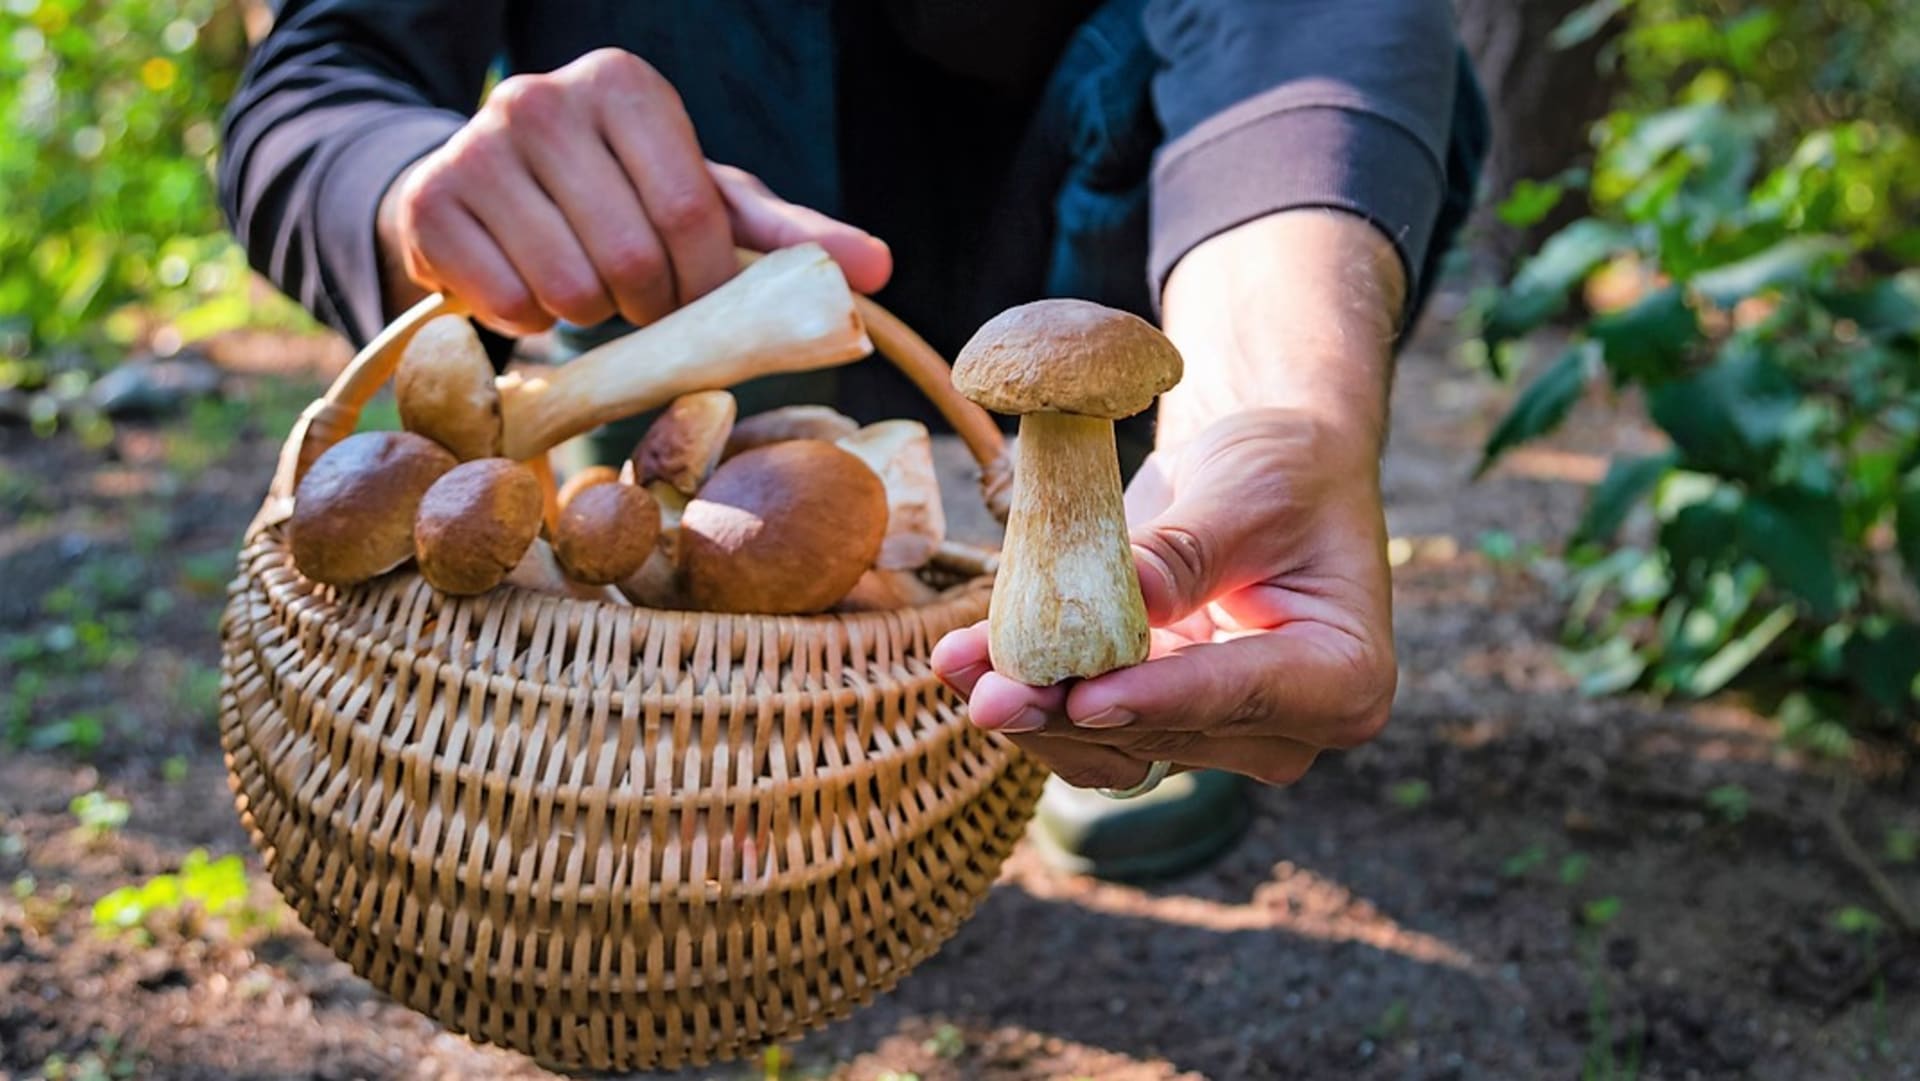 Houbařský sezona začíná v červnu pomalu nabírat na obrátkách. Z lesa si už můžeme přinést první hřibovité houby.